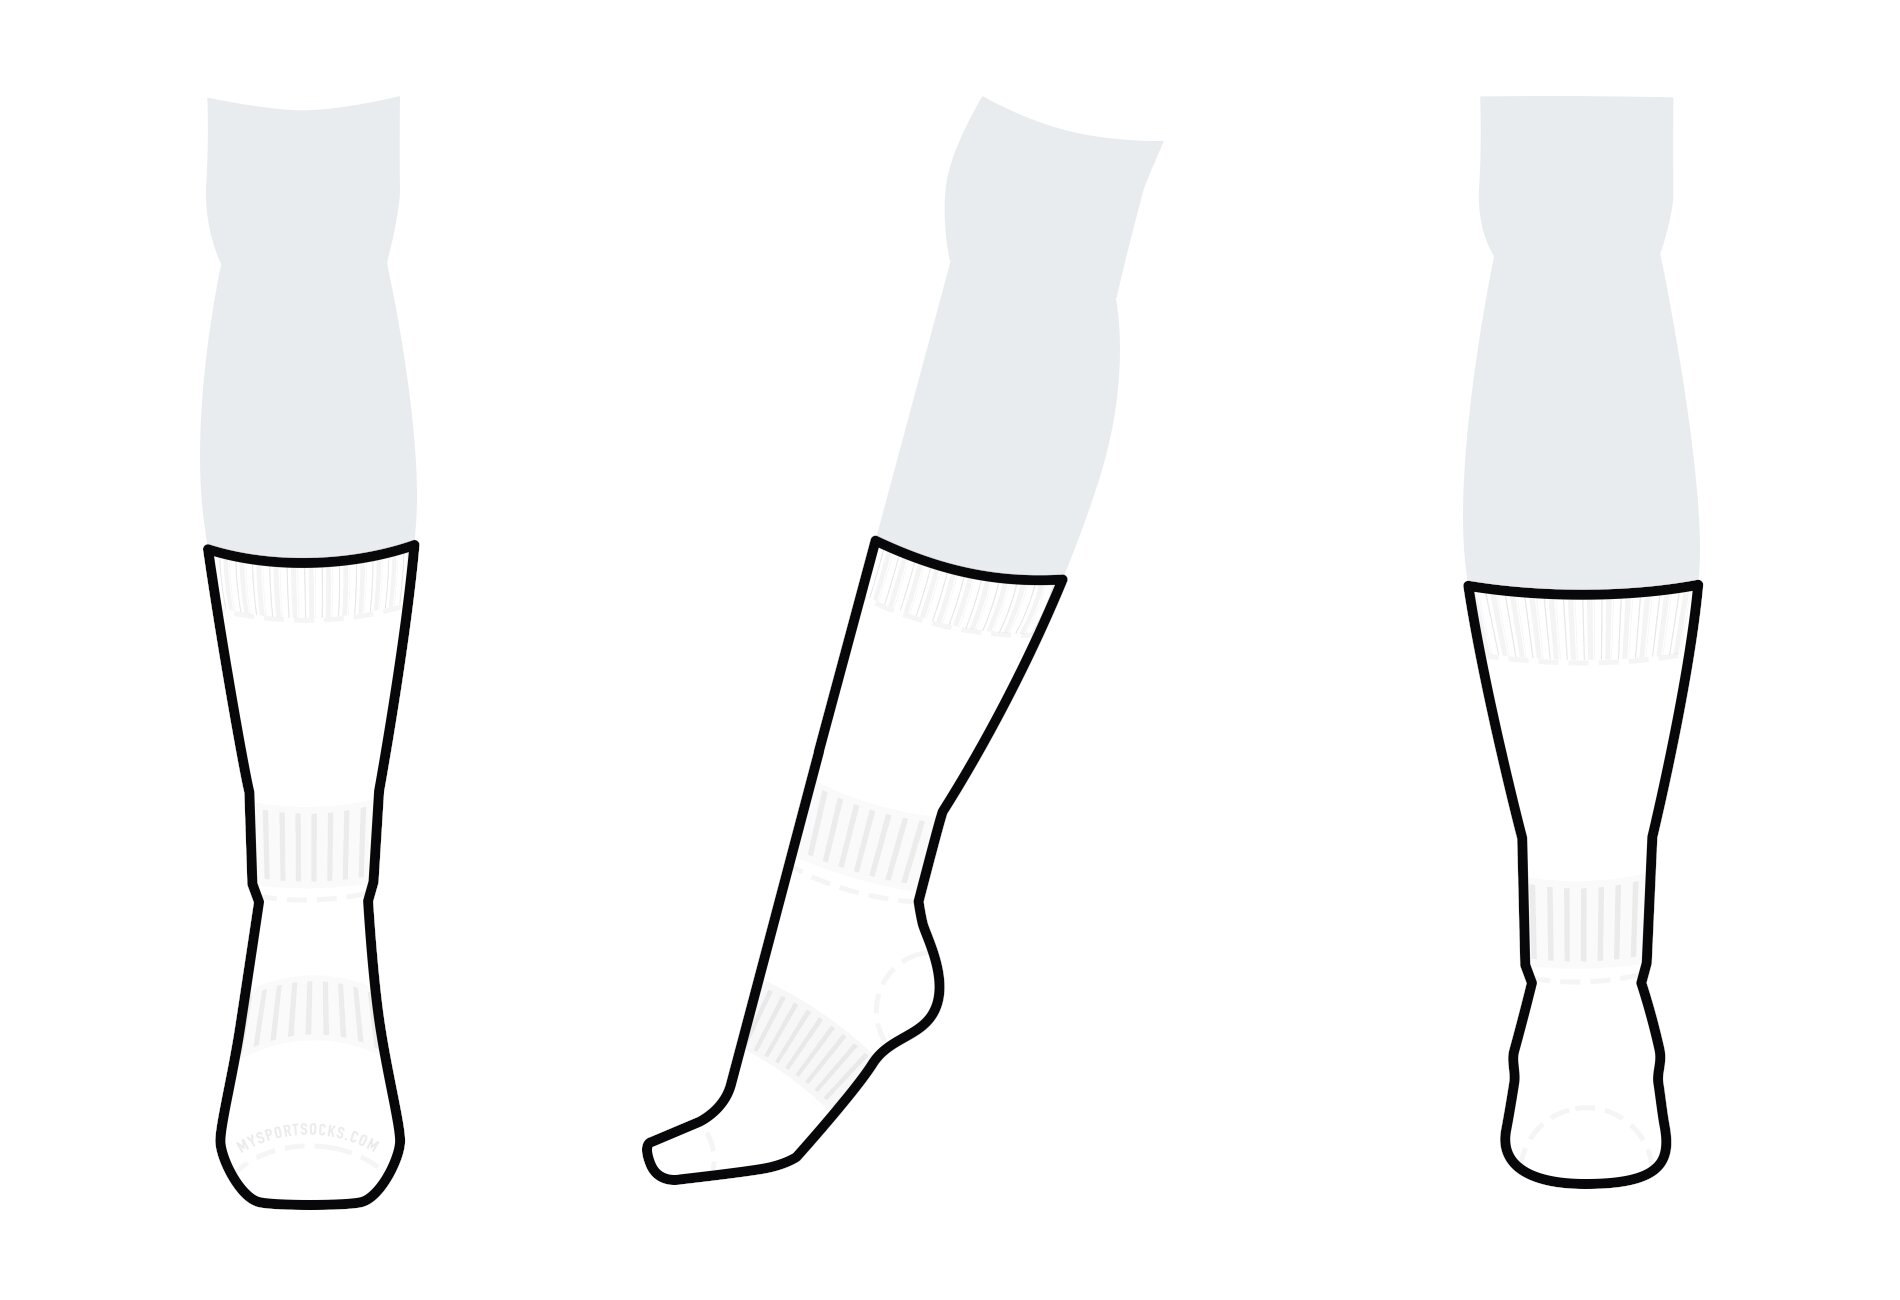 Below The Calf Sock (below-the-calf)